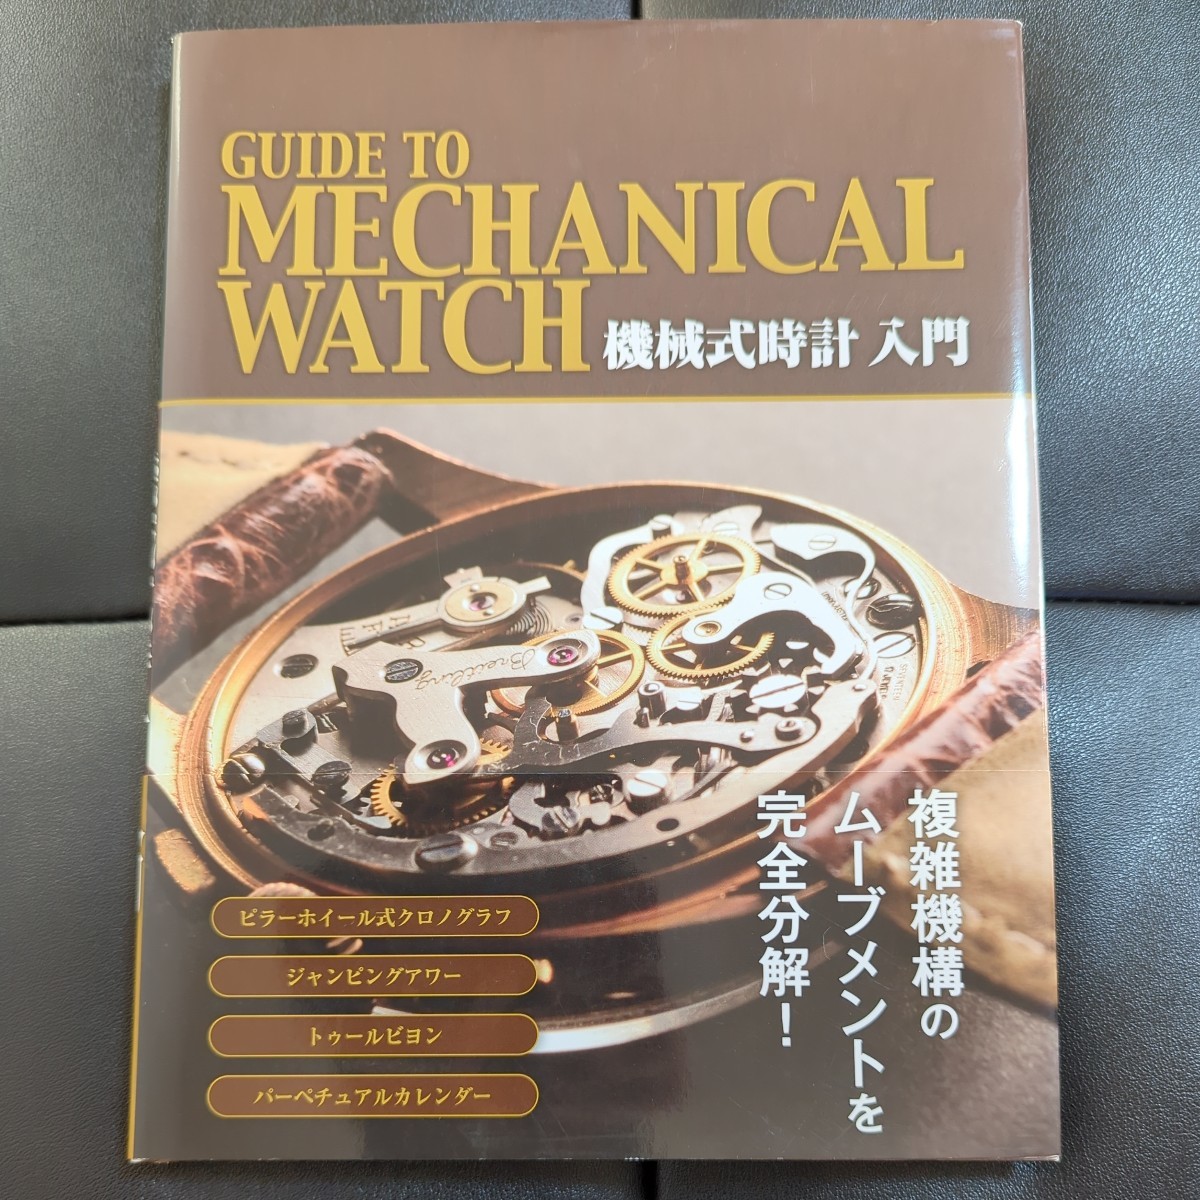 書籍 機械式時計入門 Guide to Mechanical Watch 中古 スタジオタッククリエイティブ